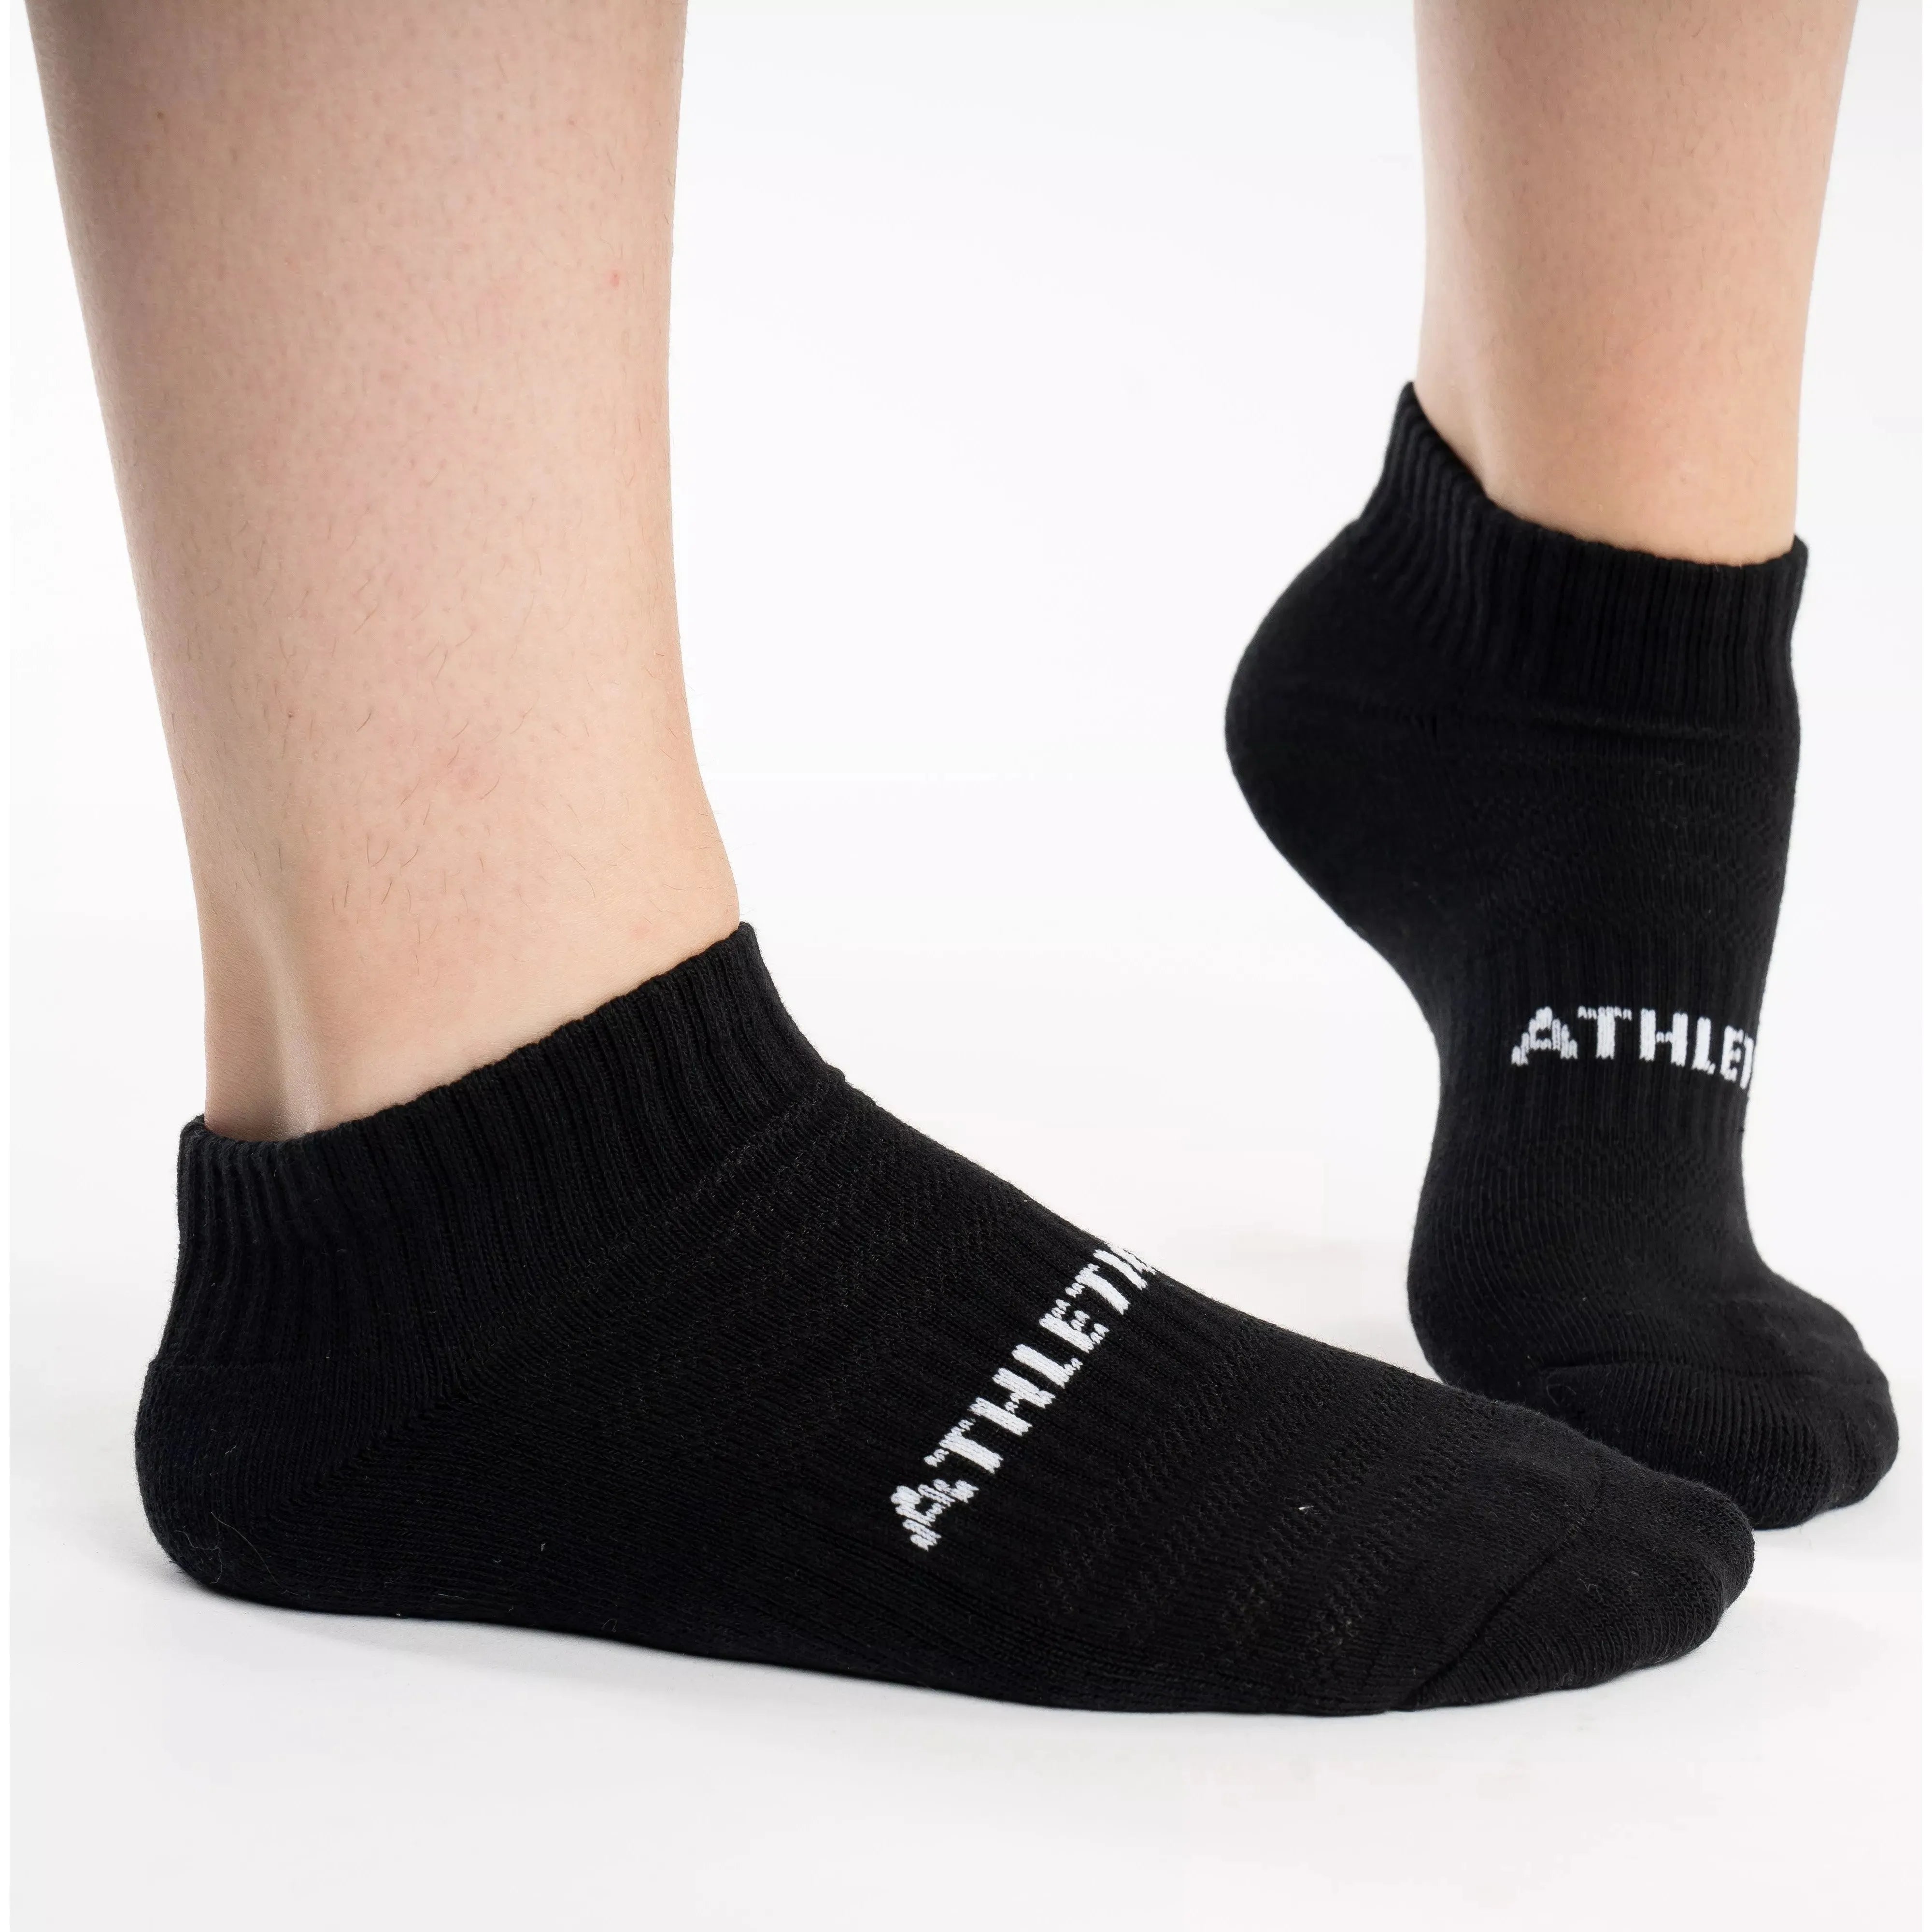 Ankle Socks 3pk Black - Athletic Bee